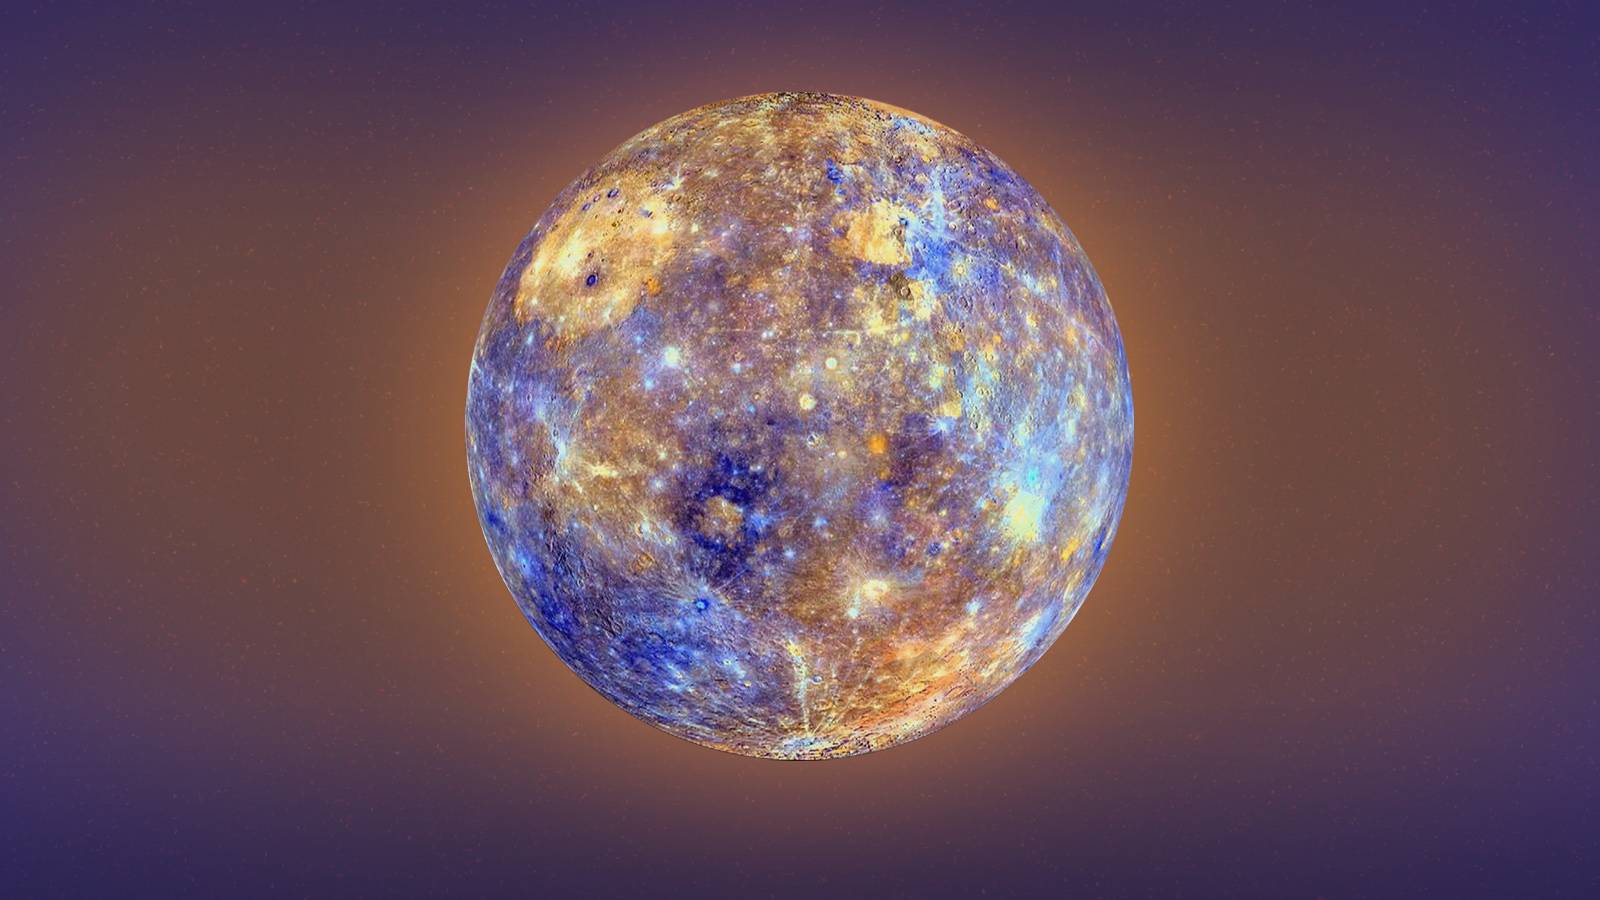 Planeet Mercurius koolstof